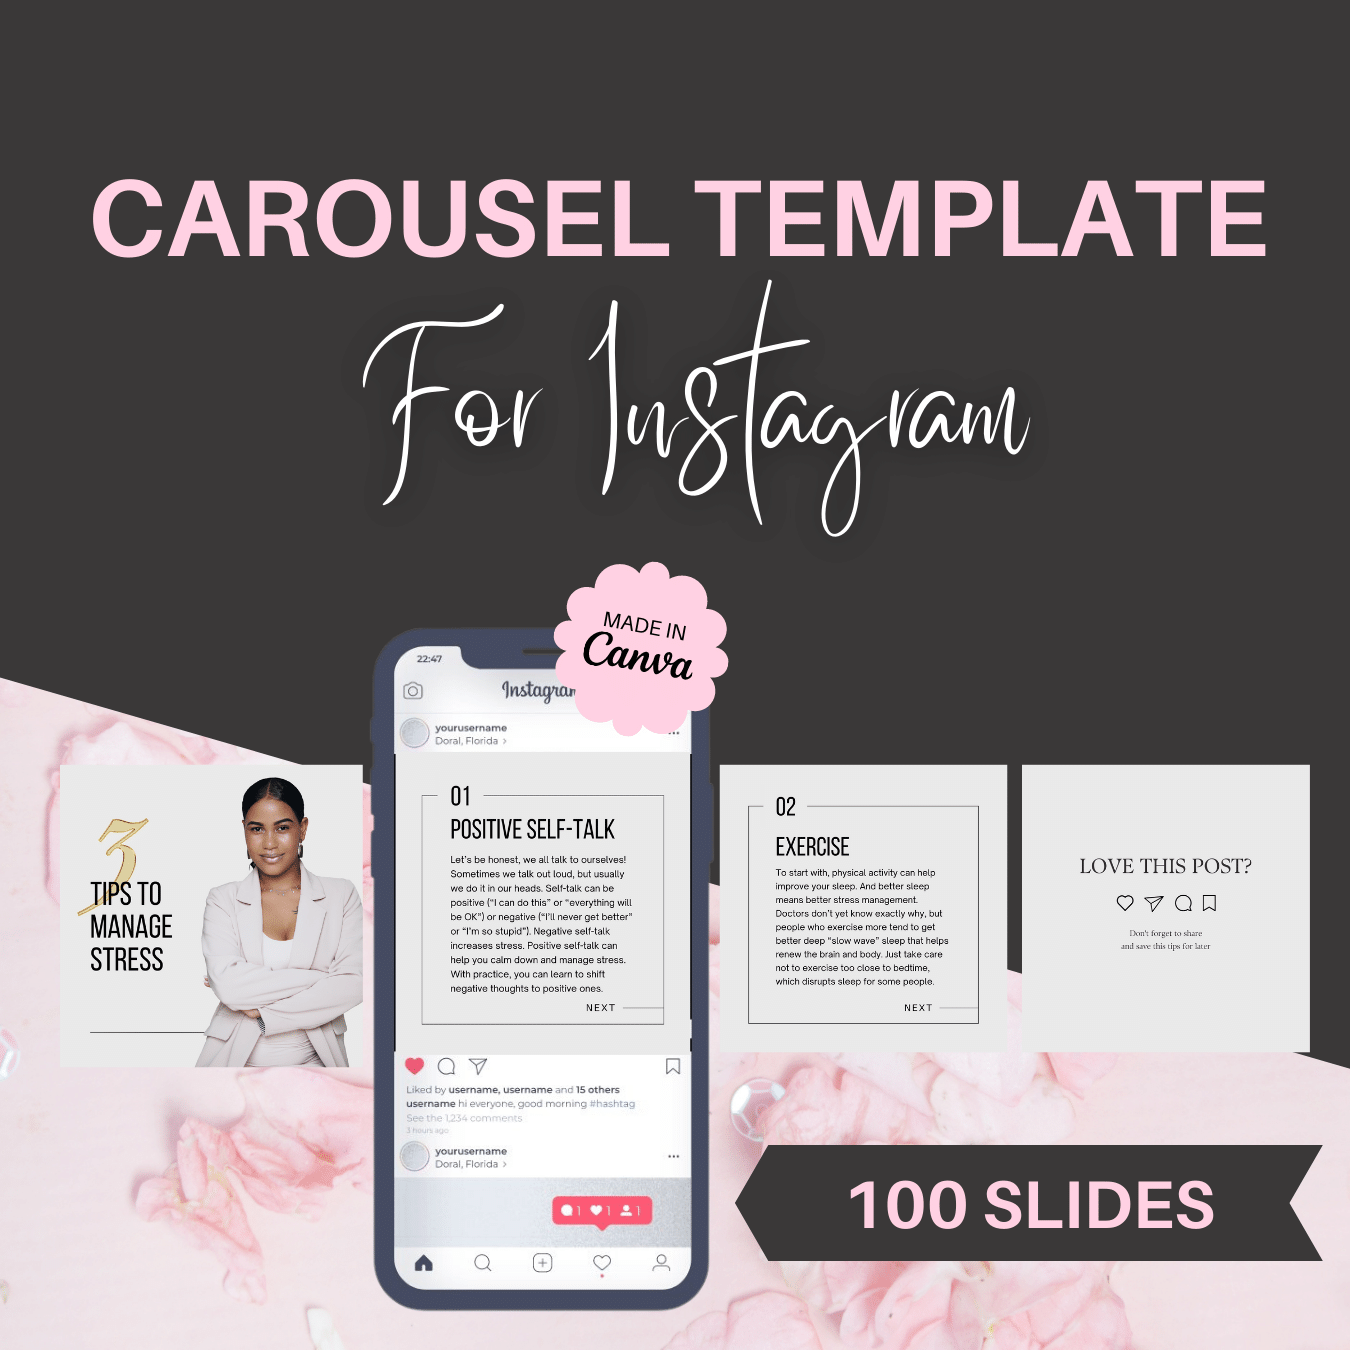 Carousel Template For Instagram - 100 Slides